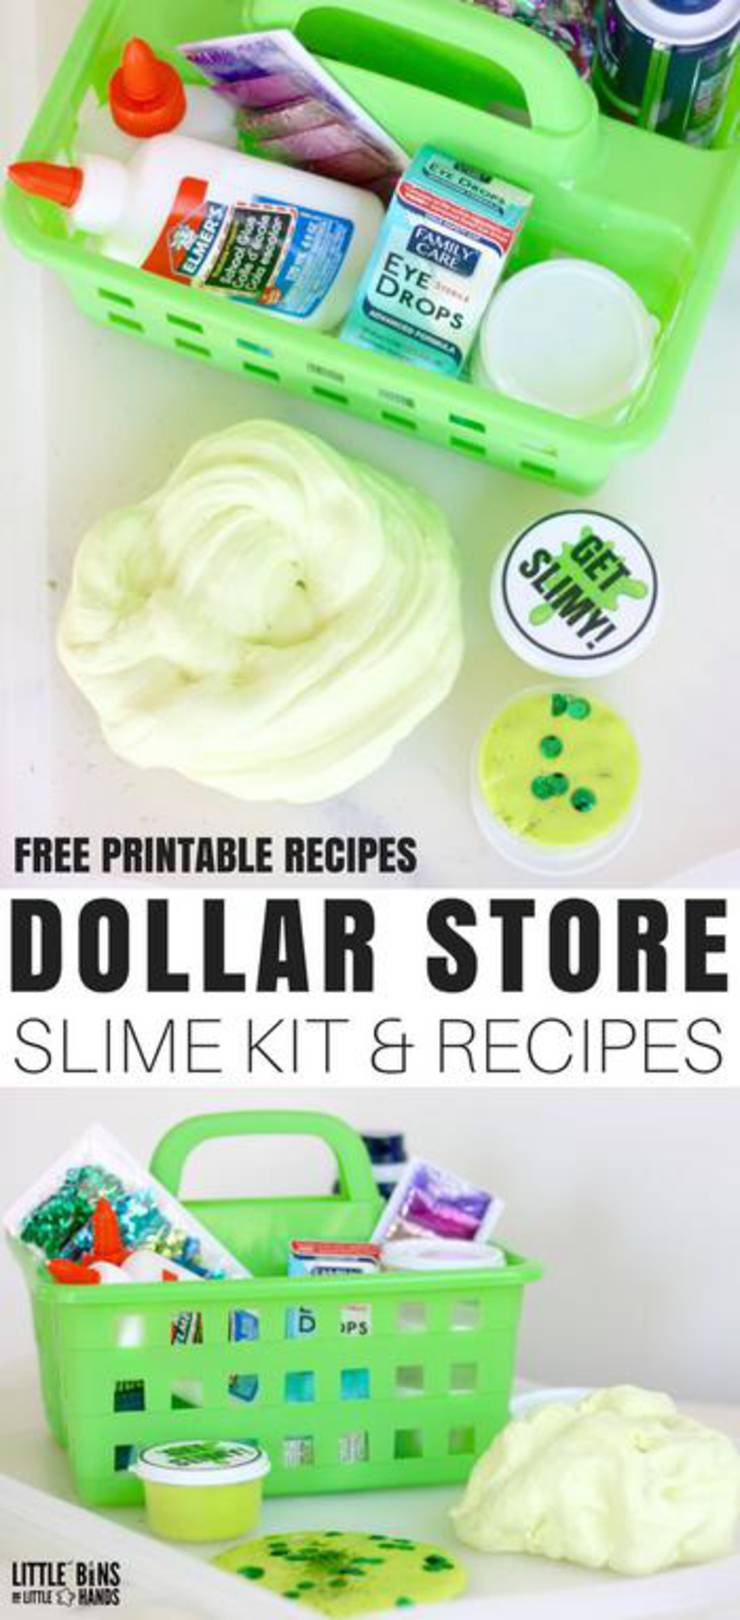 Dollar Store Slime Kit